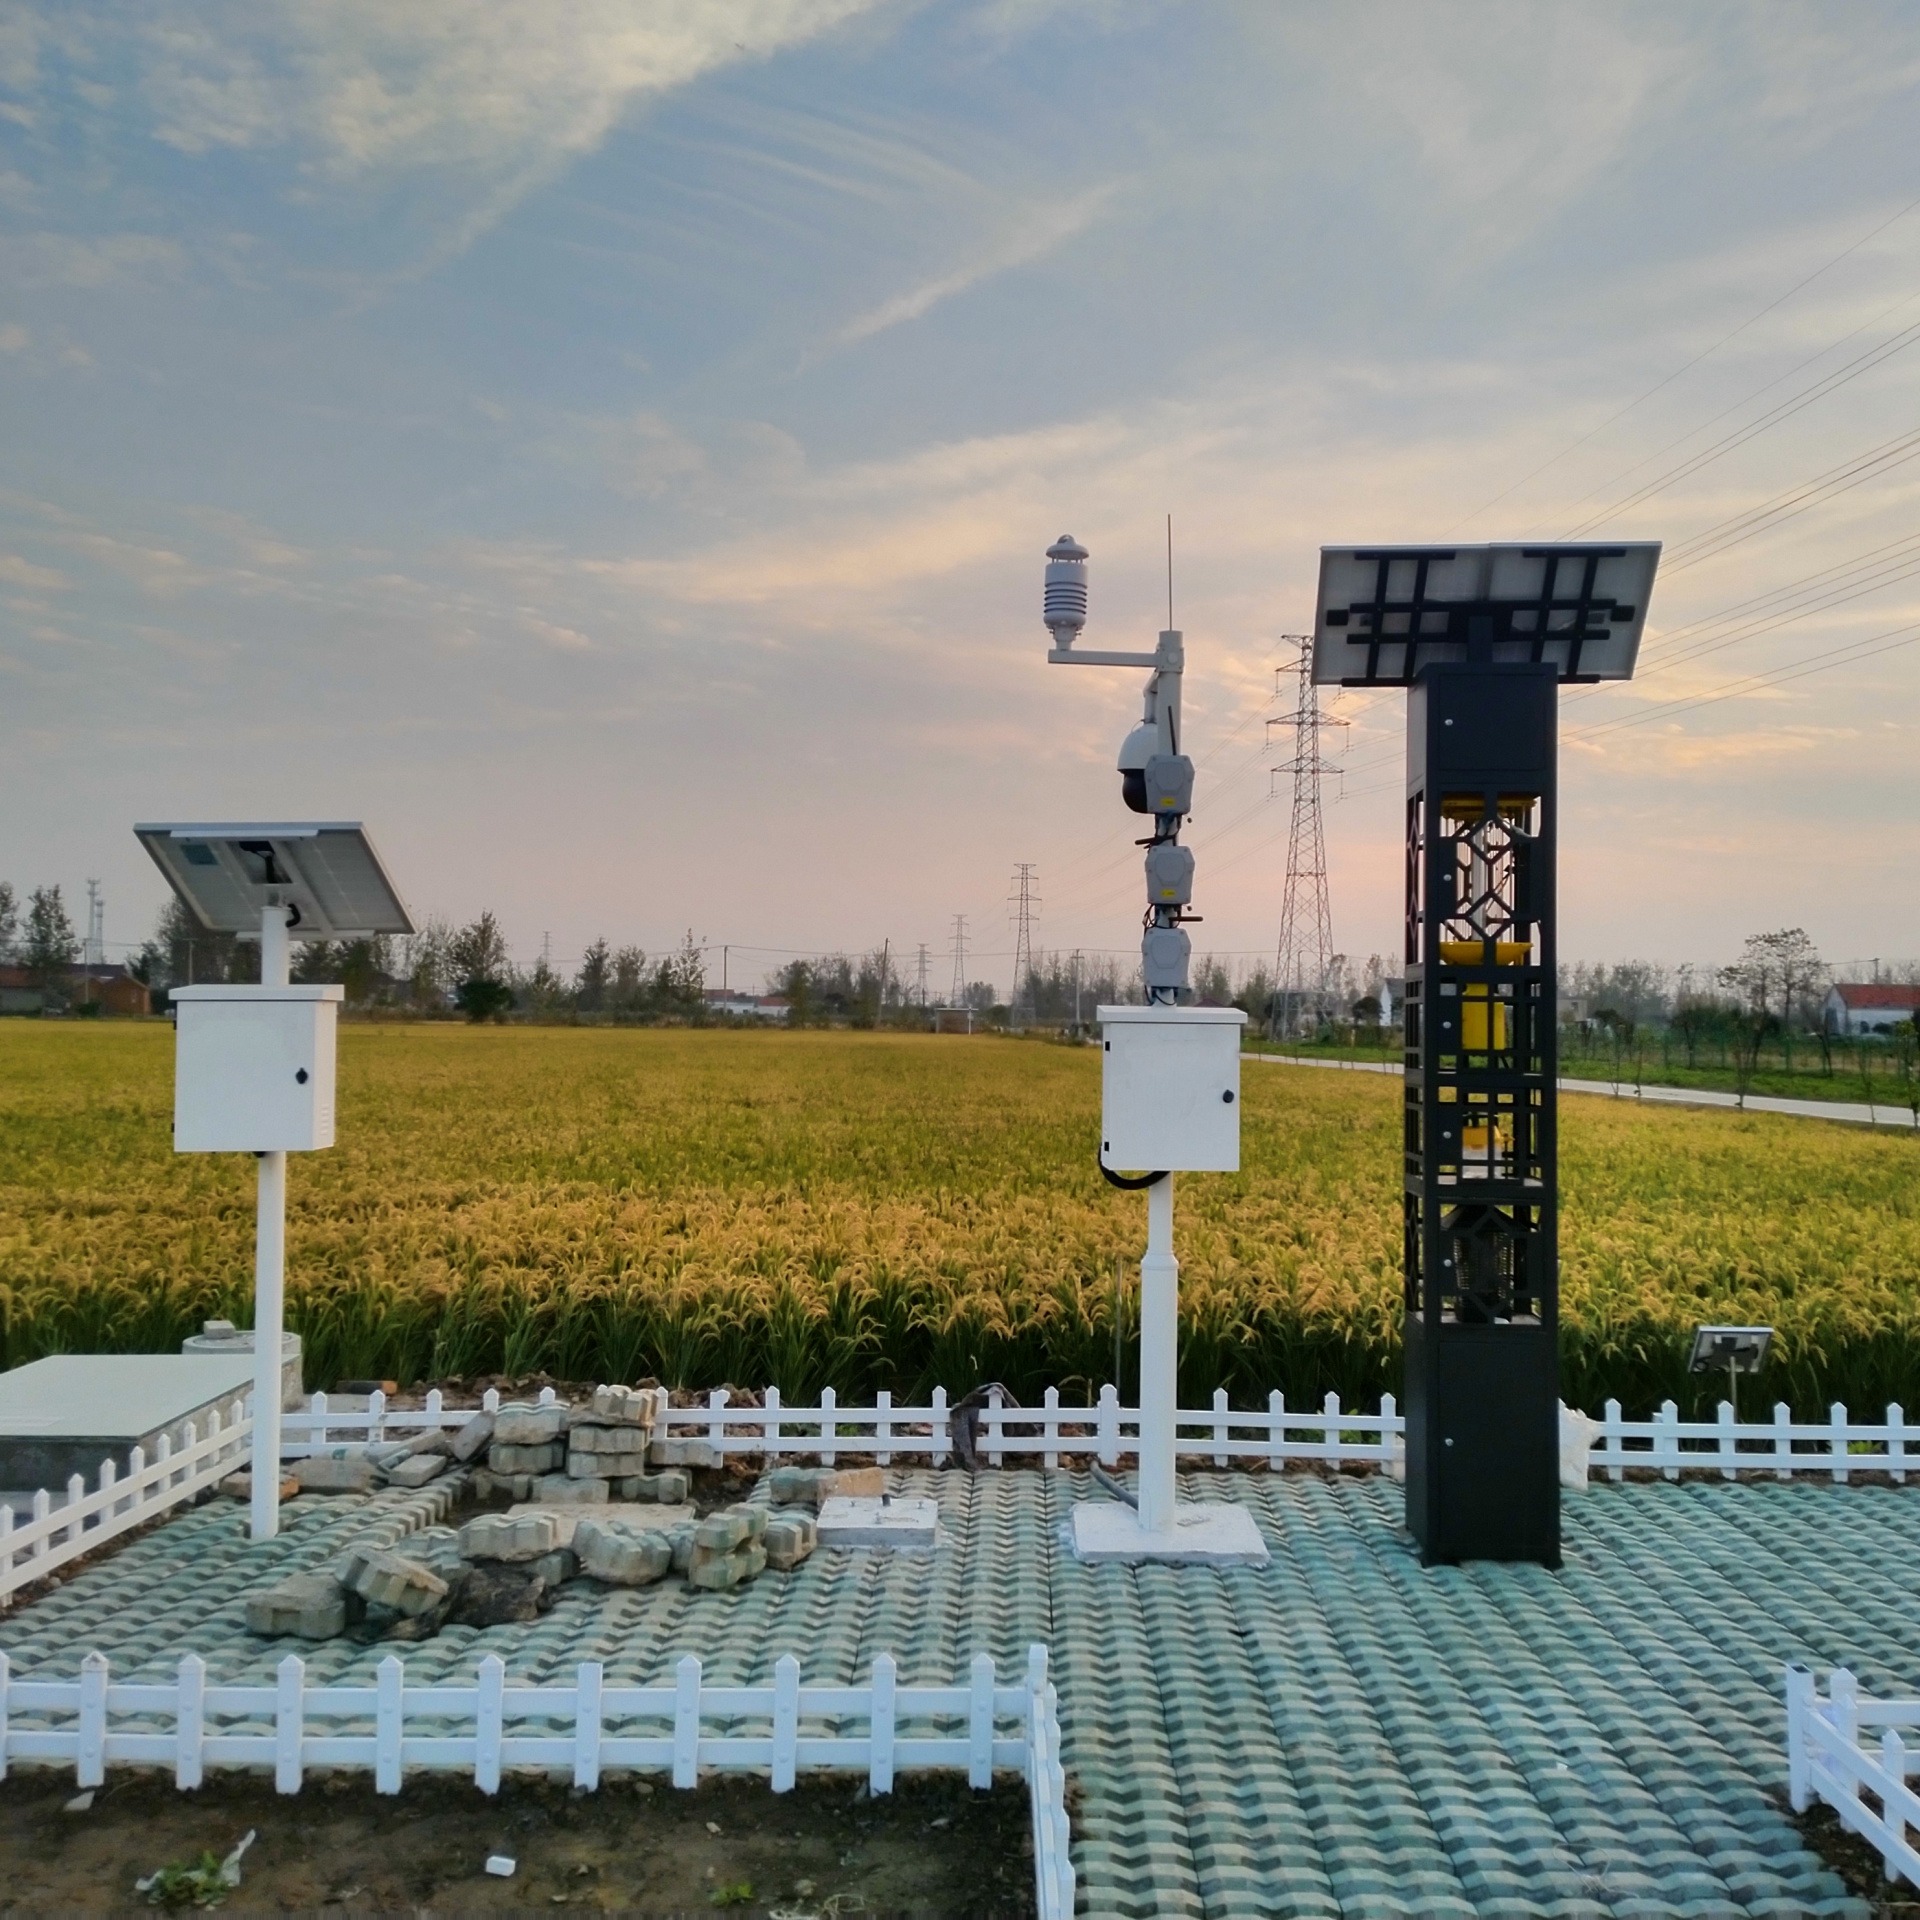 园林智能灌溉系统 植物自动灌溉系统 农作物自动灌溉 无人灌溉 生产厂家WHCK万宏测控